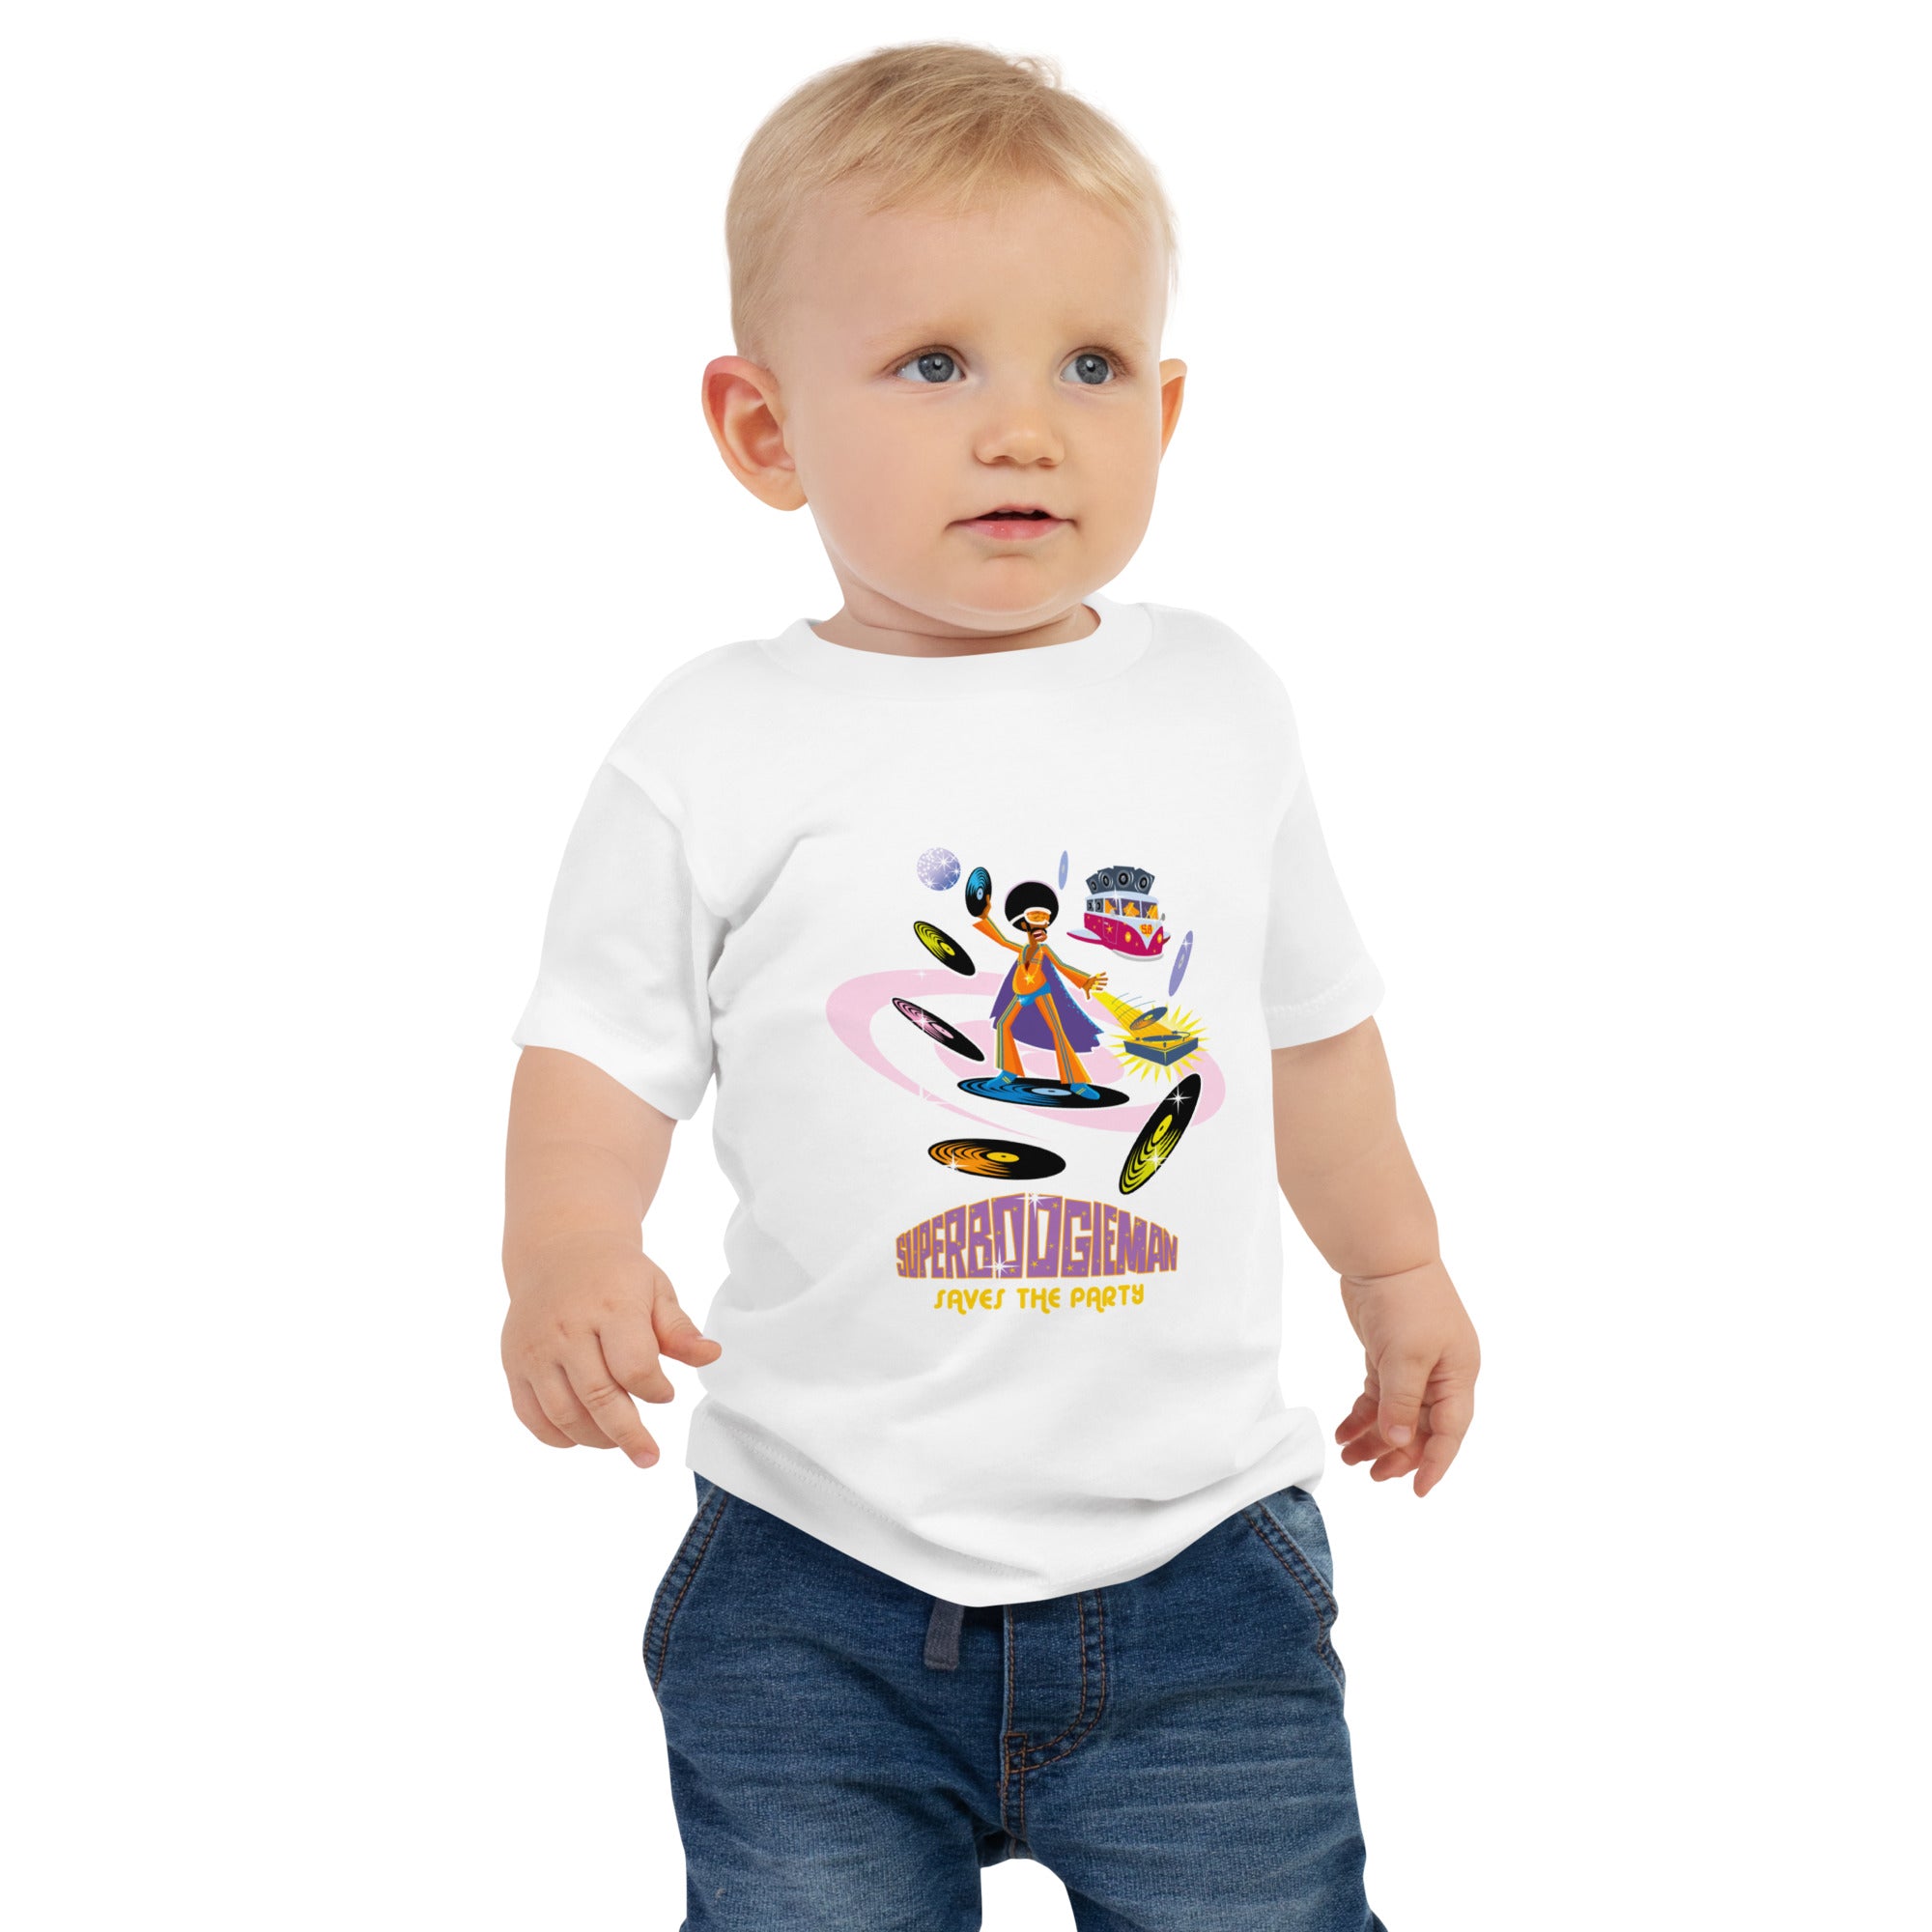 T-shirt pour bébé Superboogieman Saves the Party